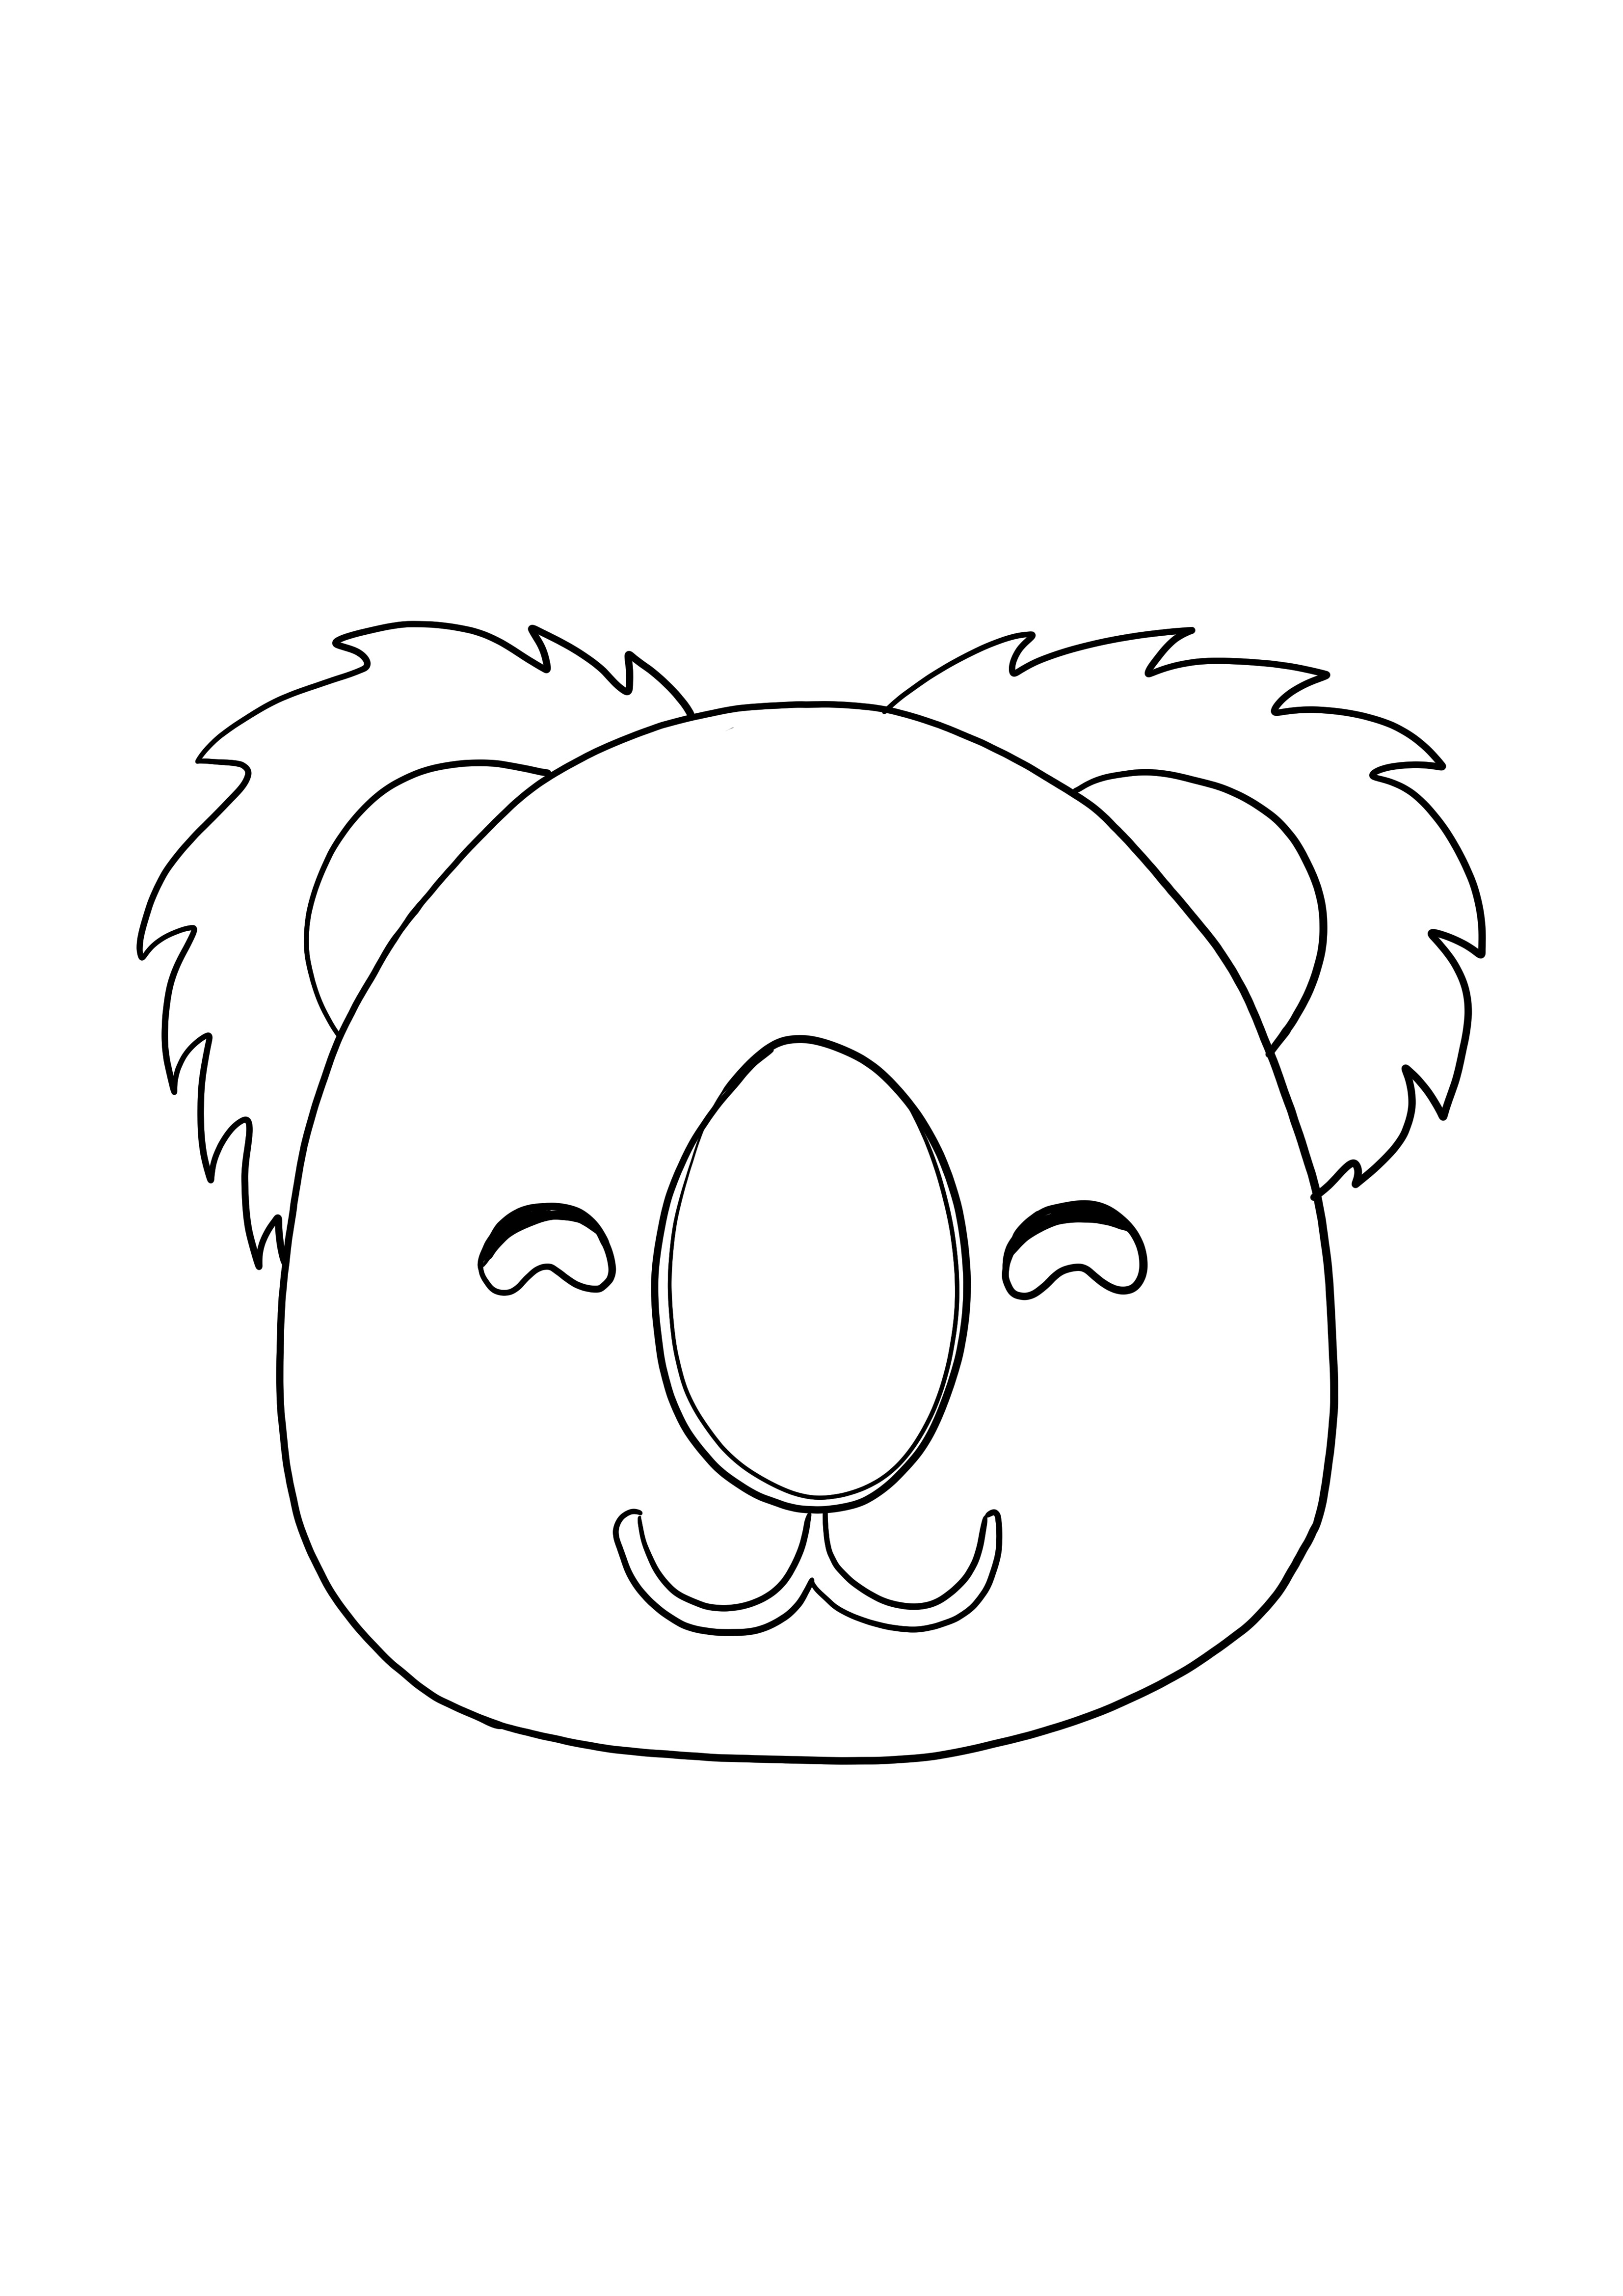 Immagine da colorare di Koala sorridente per bambini gratis